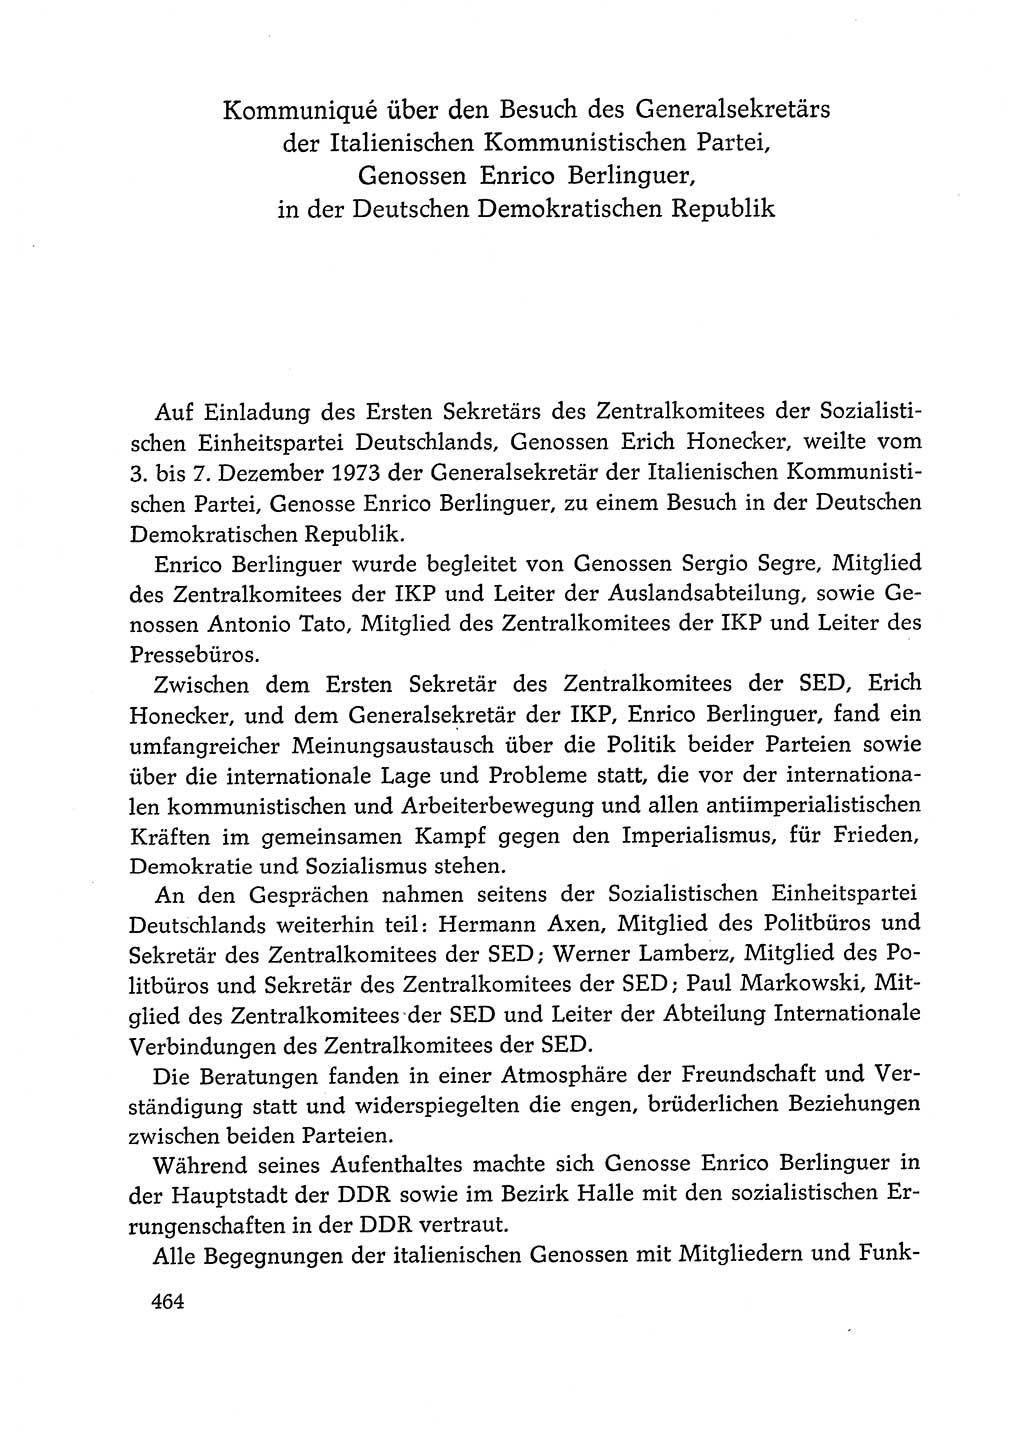 Dokumente der Sozialistischen Einheitspartei Deutschlands (SED) [Deutsche Demokratische Republik (DDR)] 1972-1973, Seite 464 (Dok. SED DDR 1972-1973, S. 464)